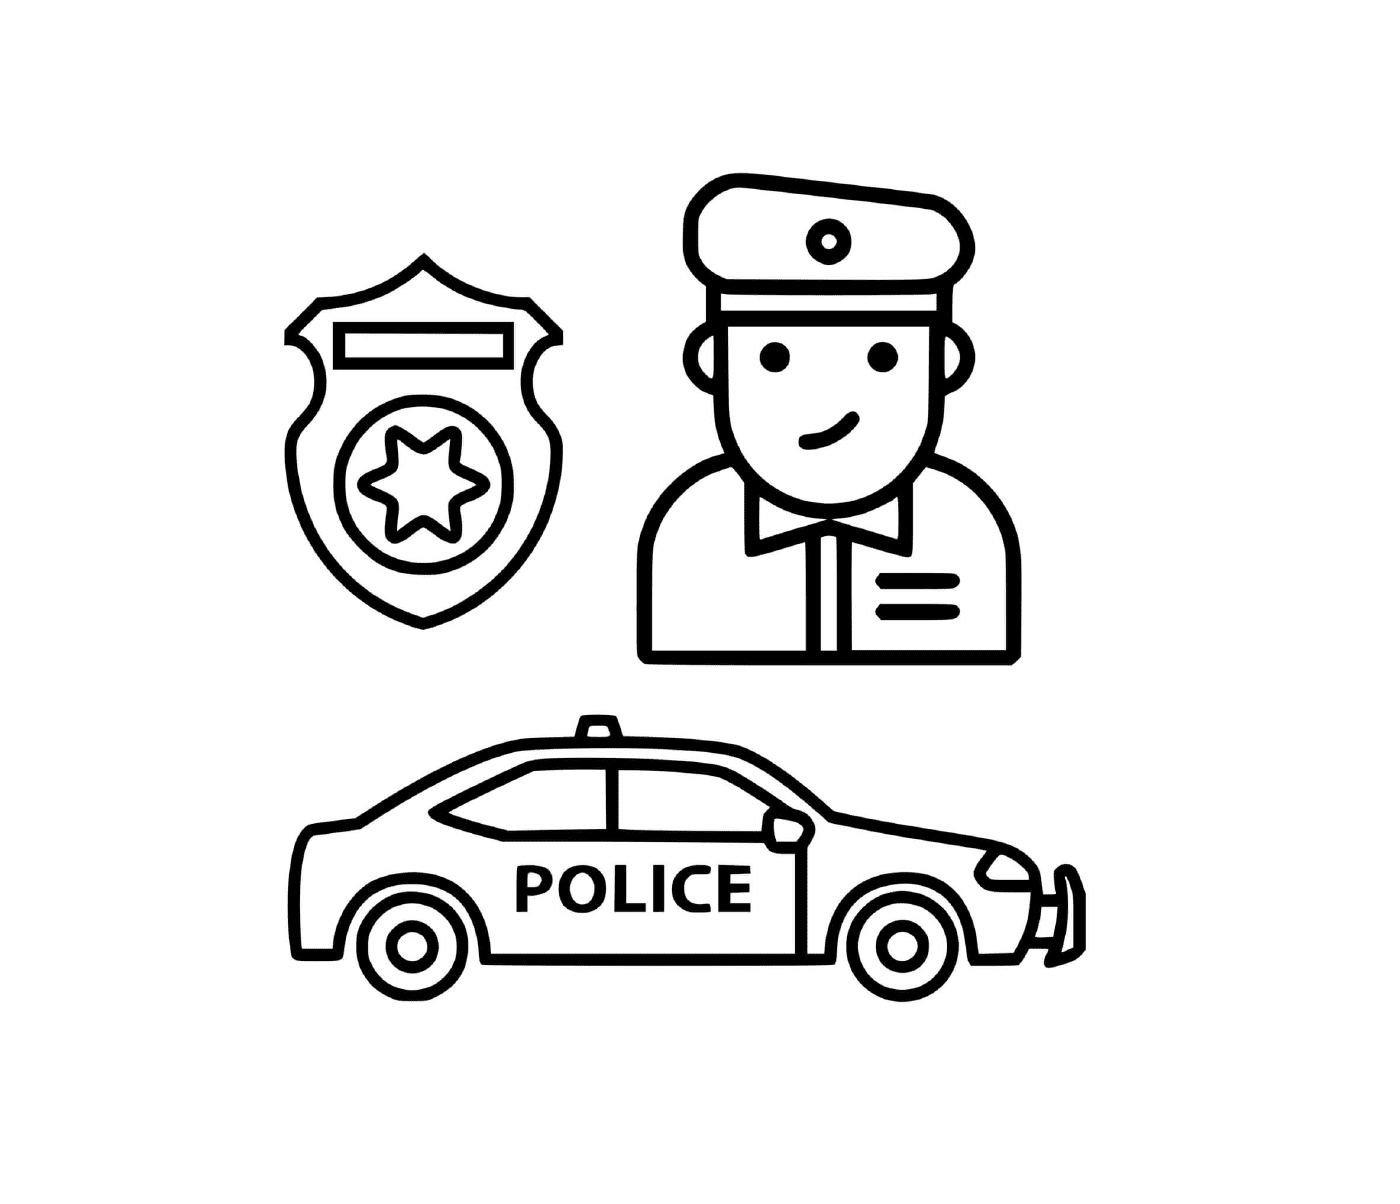  Policial, carro, distintivo distintivo distintivo 